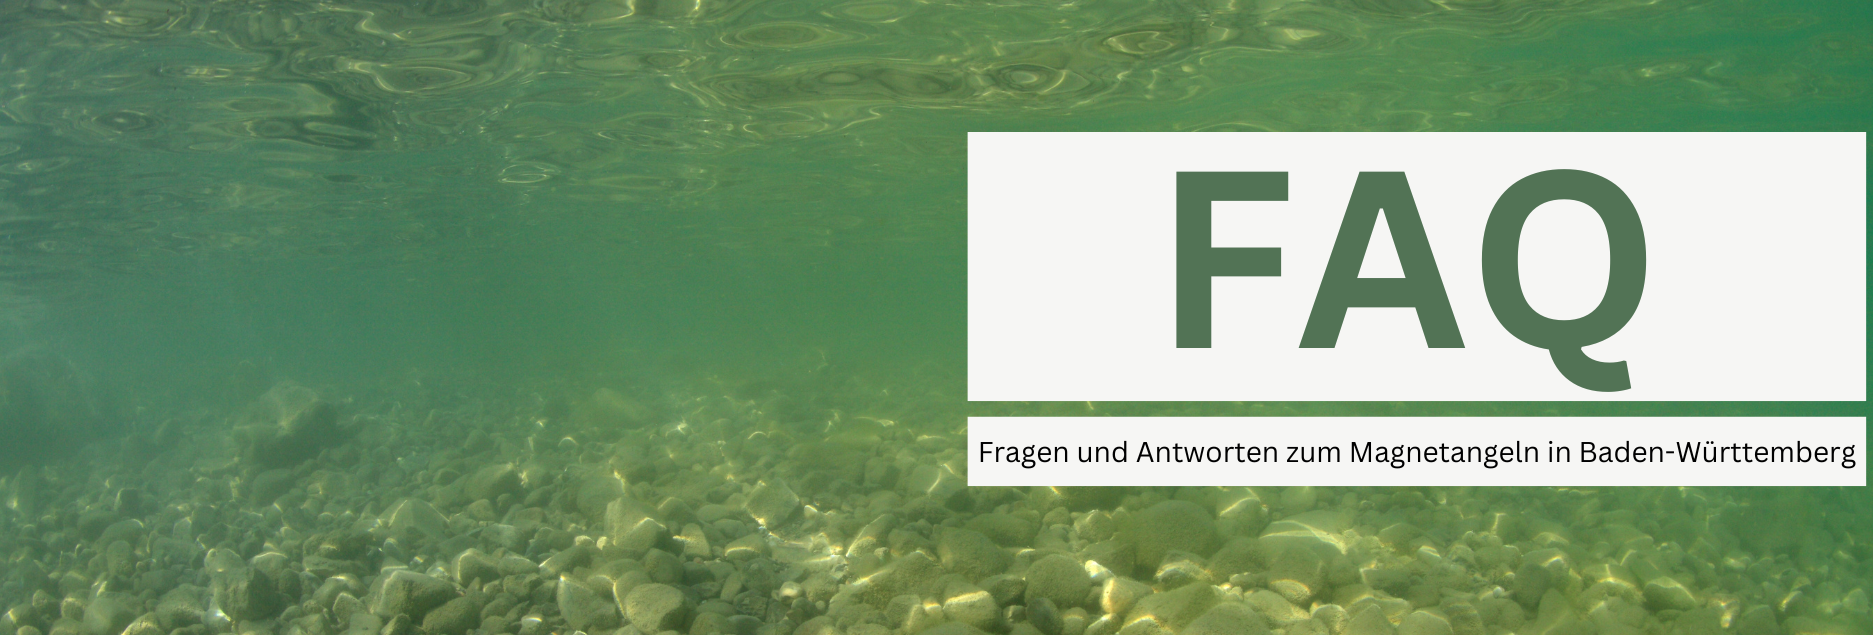 Das Bild zeigt einen kiesigen Seegrund, darüber der schriftzug: FAQ - Fragen und Antworten zum Magnetangeln in Baden-Württemberg